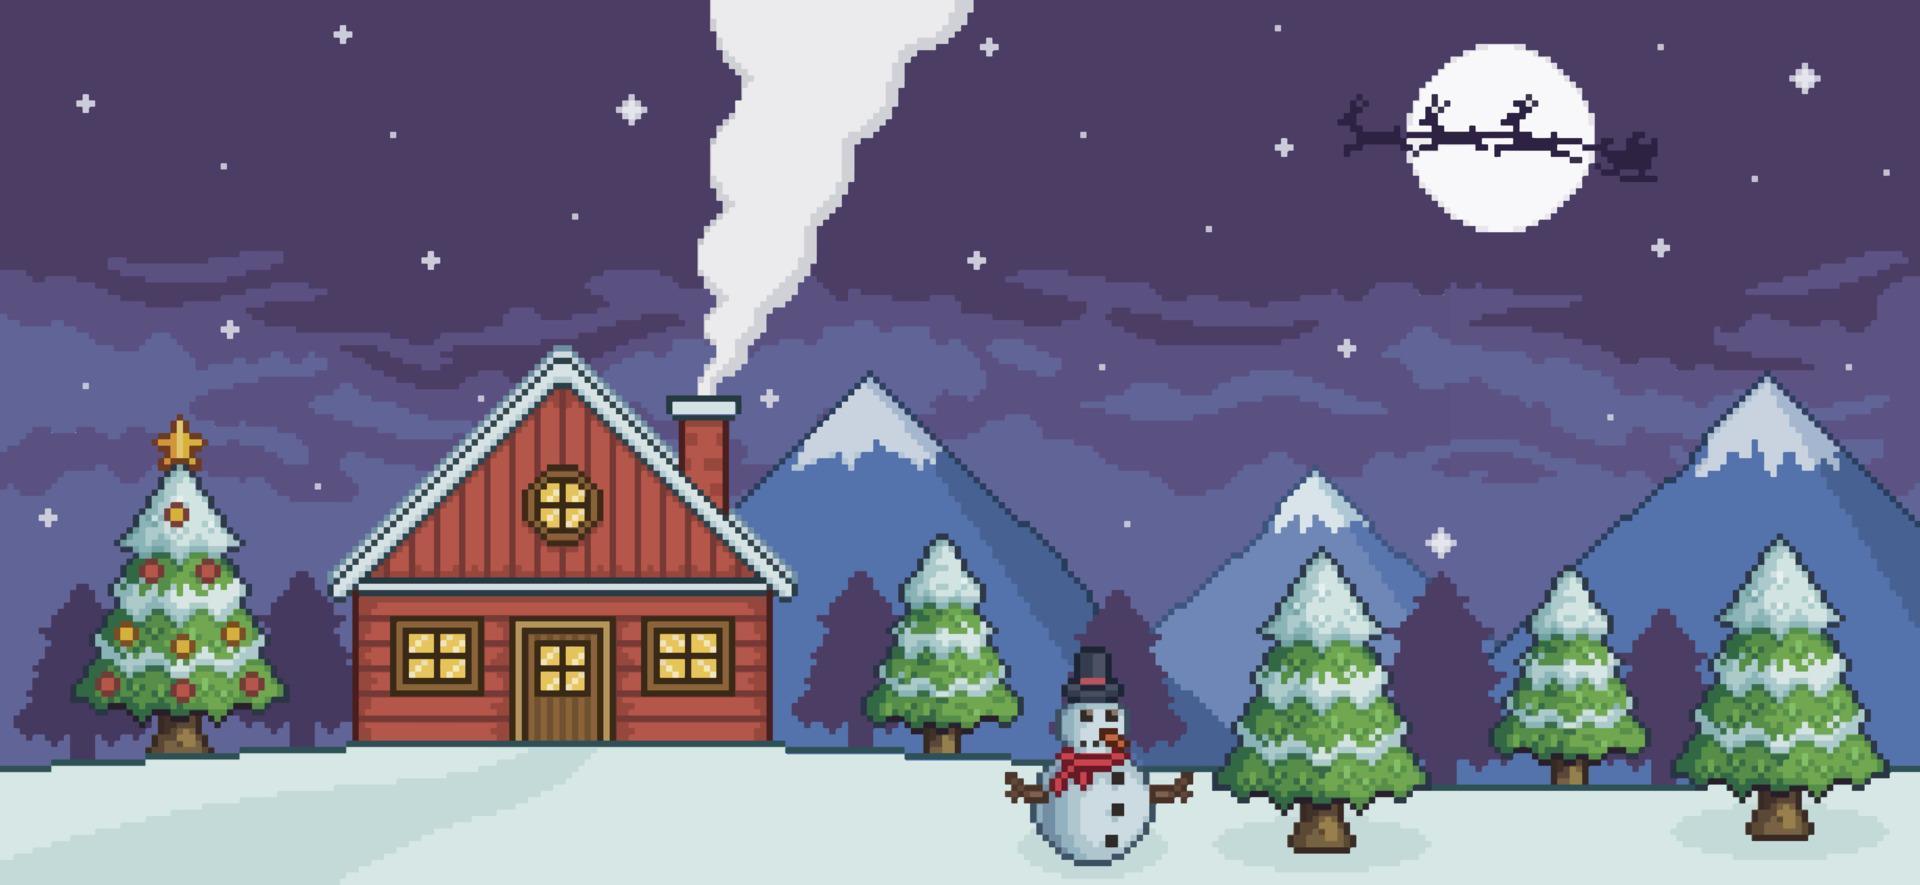 pixel konst jul landskap med hus, berg, tall skog, jul träd, snögubbe bakgrund för 8bit spel vektor